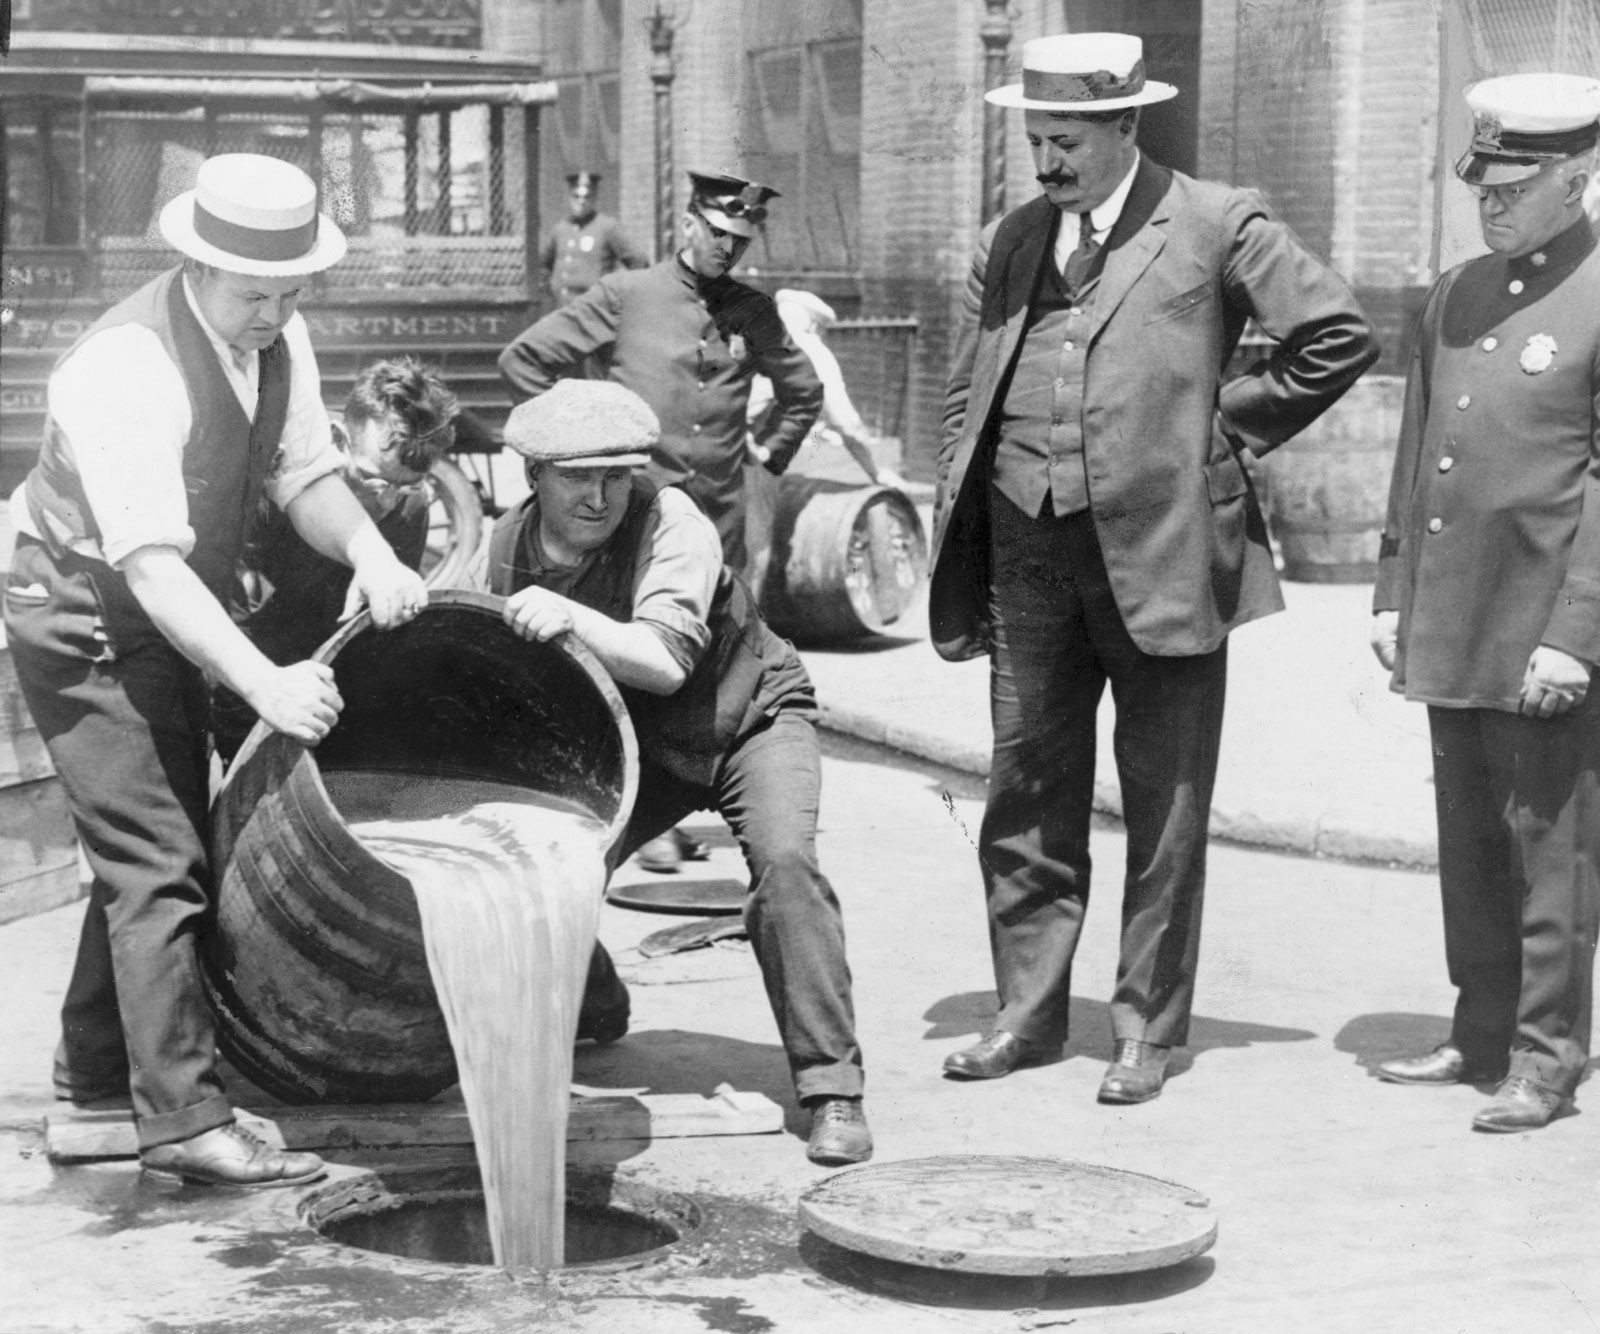 Σε ασπρόμαυρη φωτογραφία από την εποχή της ποταπαγόρευσης Νεοϋορκέζοι να χύνουν βαρέλια με αλκοόλ